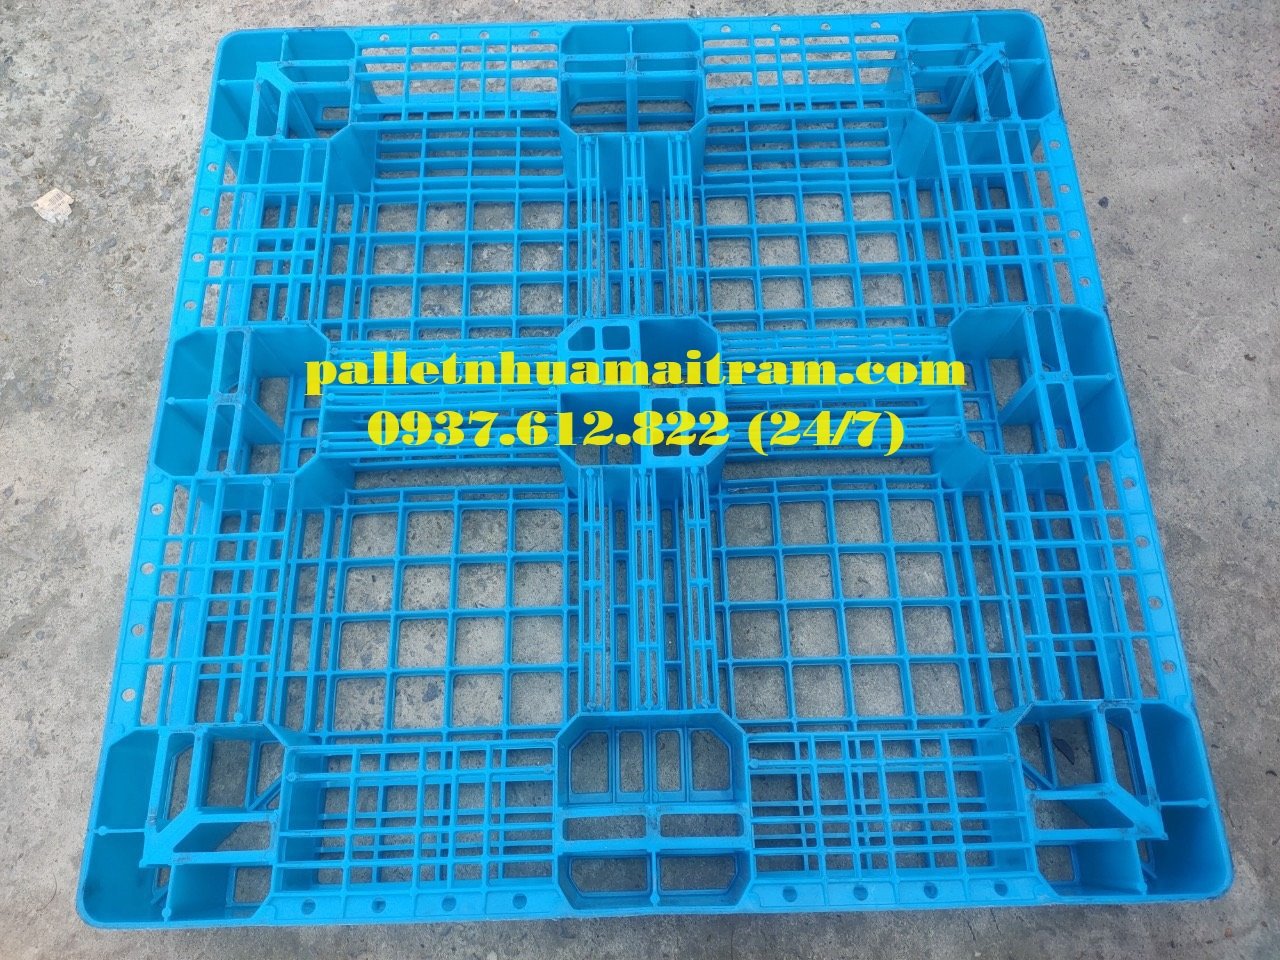 Pallet nhựa đã qua sử dụng chất lượng cao, liên hệ 0937612822 (24/7)